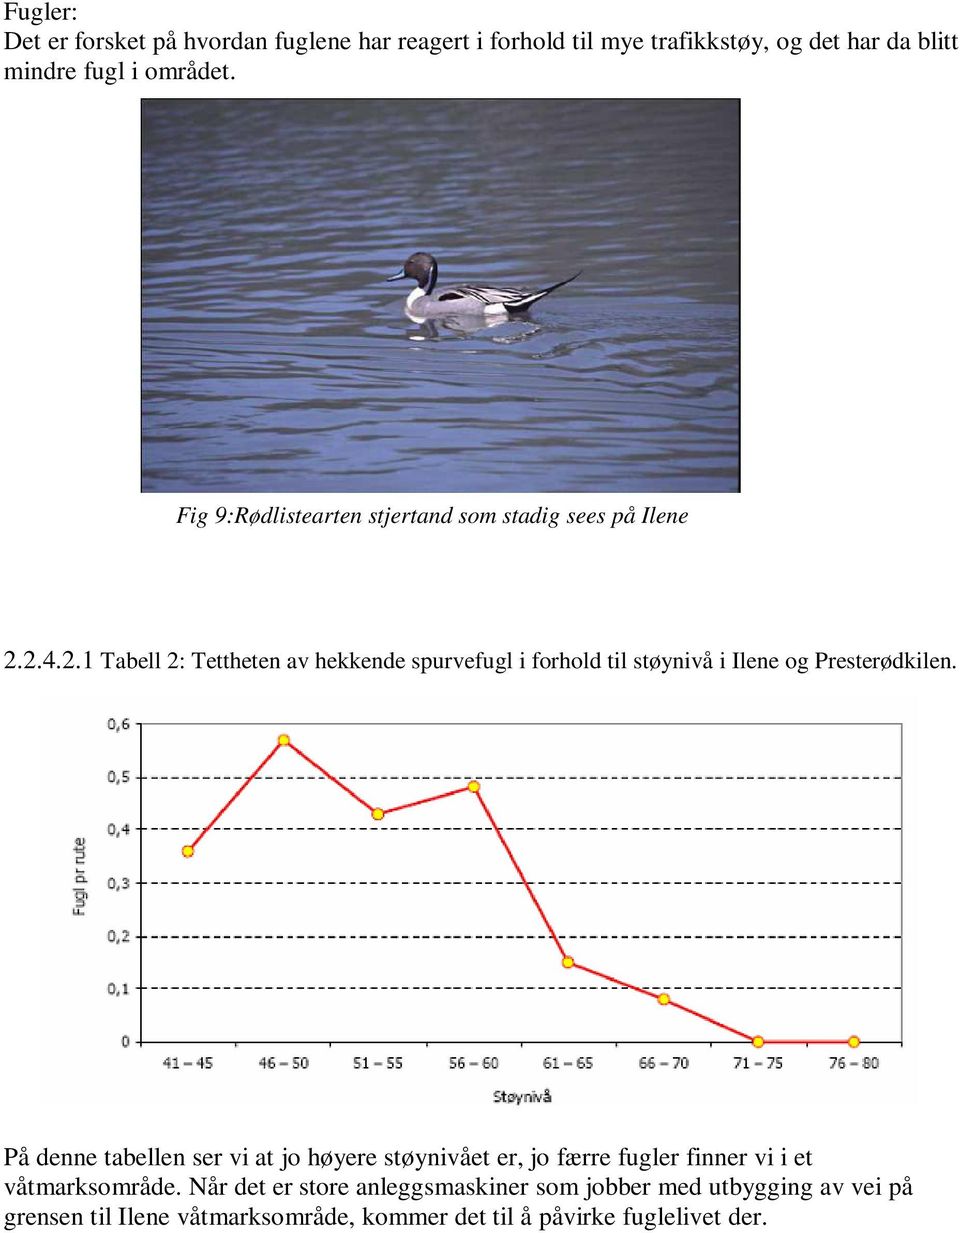 2.4.2.1 Tabell 2: Tettheten av hekkende spurvefugl i forhold til støynivå i Ilene og Presterødkilen.